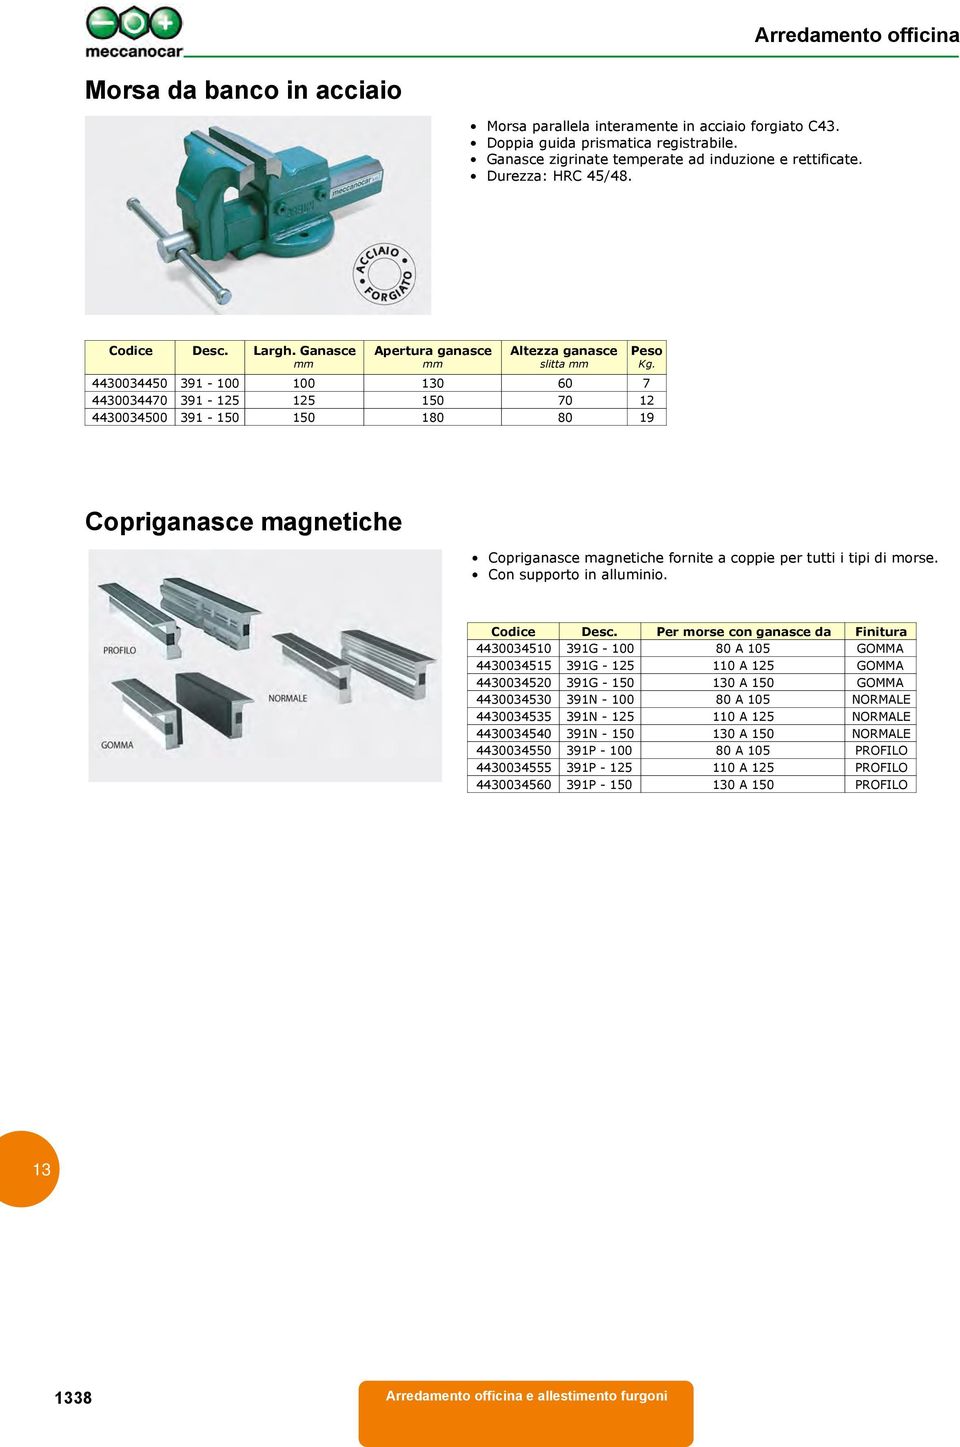 Copriganasce magnetiche Copriganasce magnetiche fornite a coppie per tutti i tipi di morse. Con supporto in alluminio. Codice Desc.